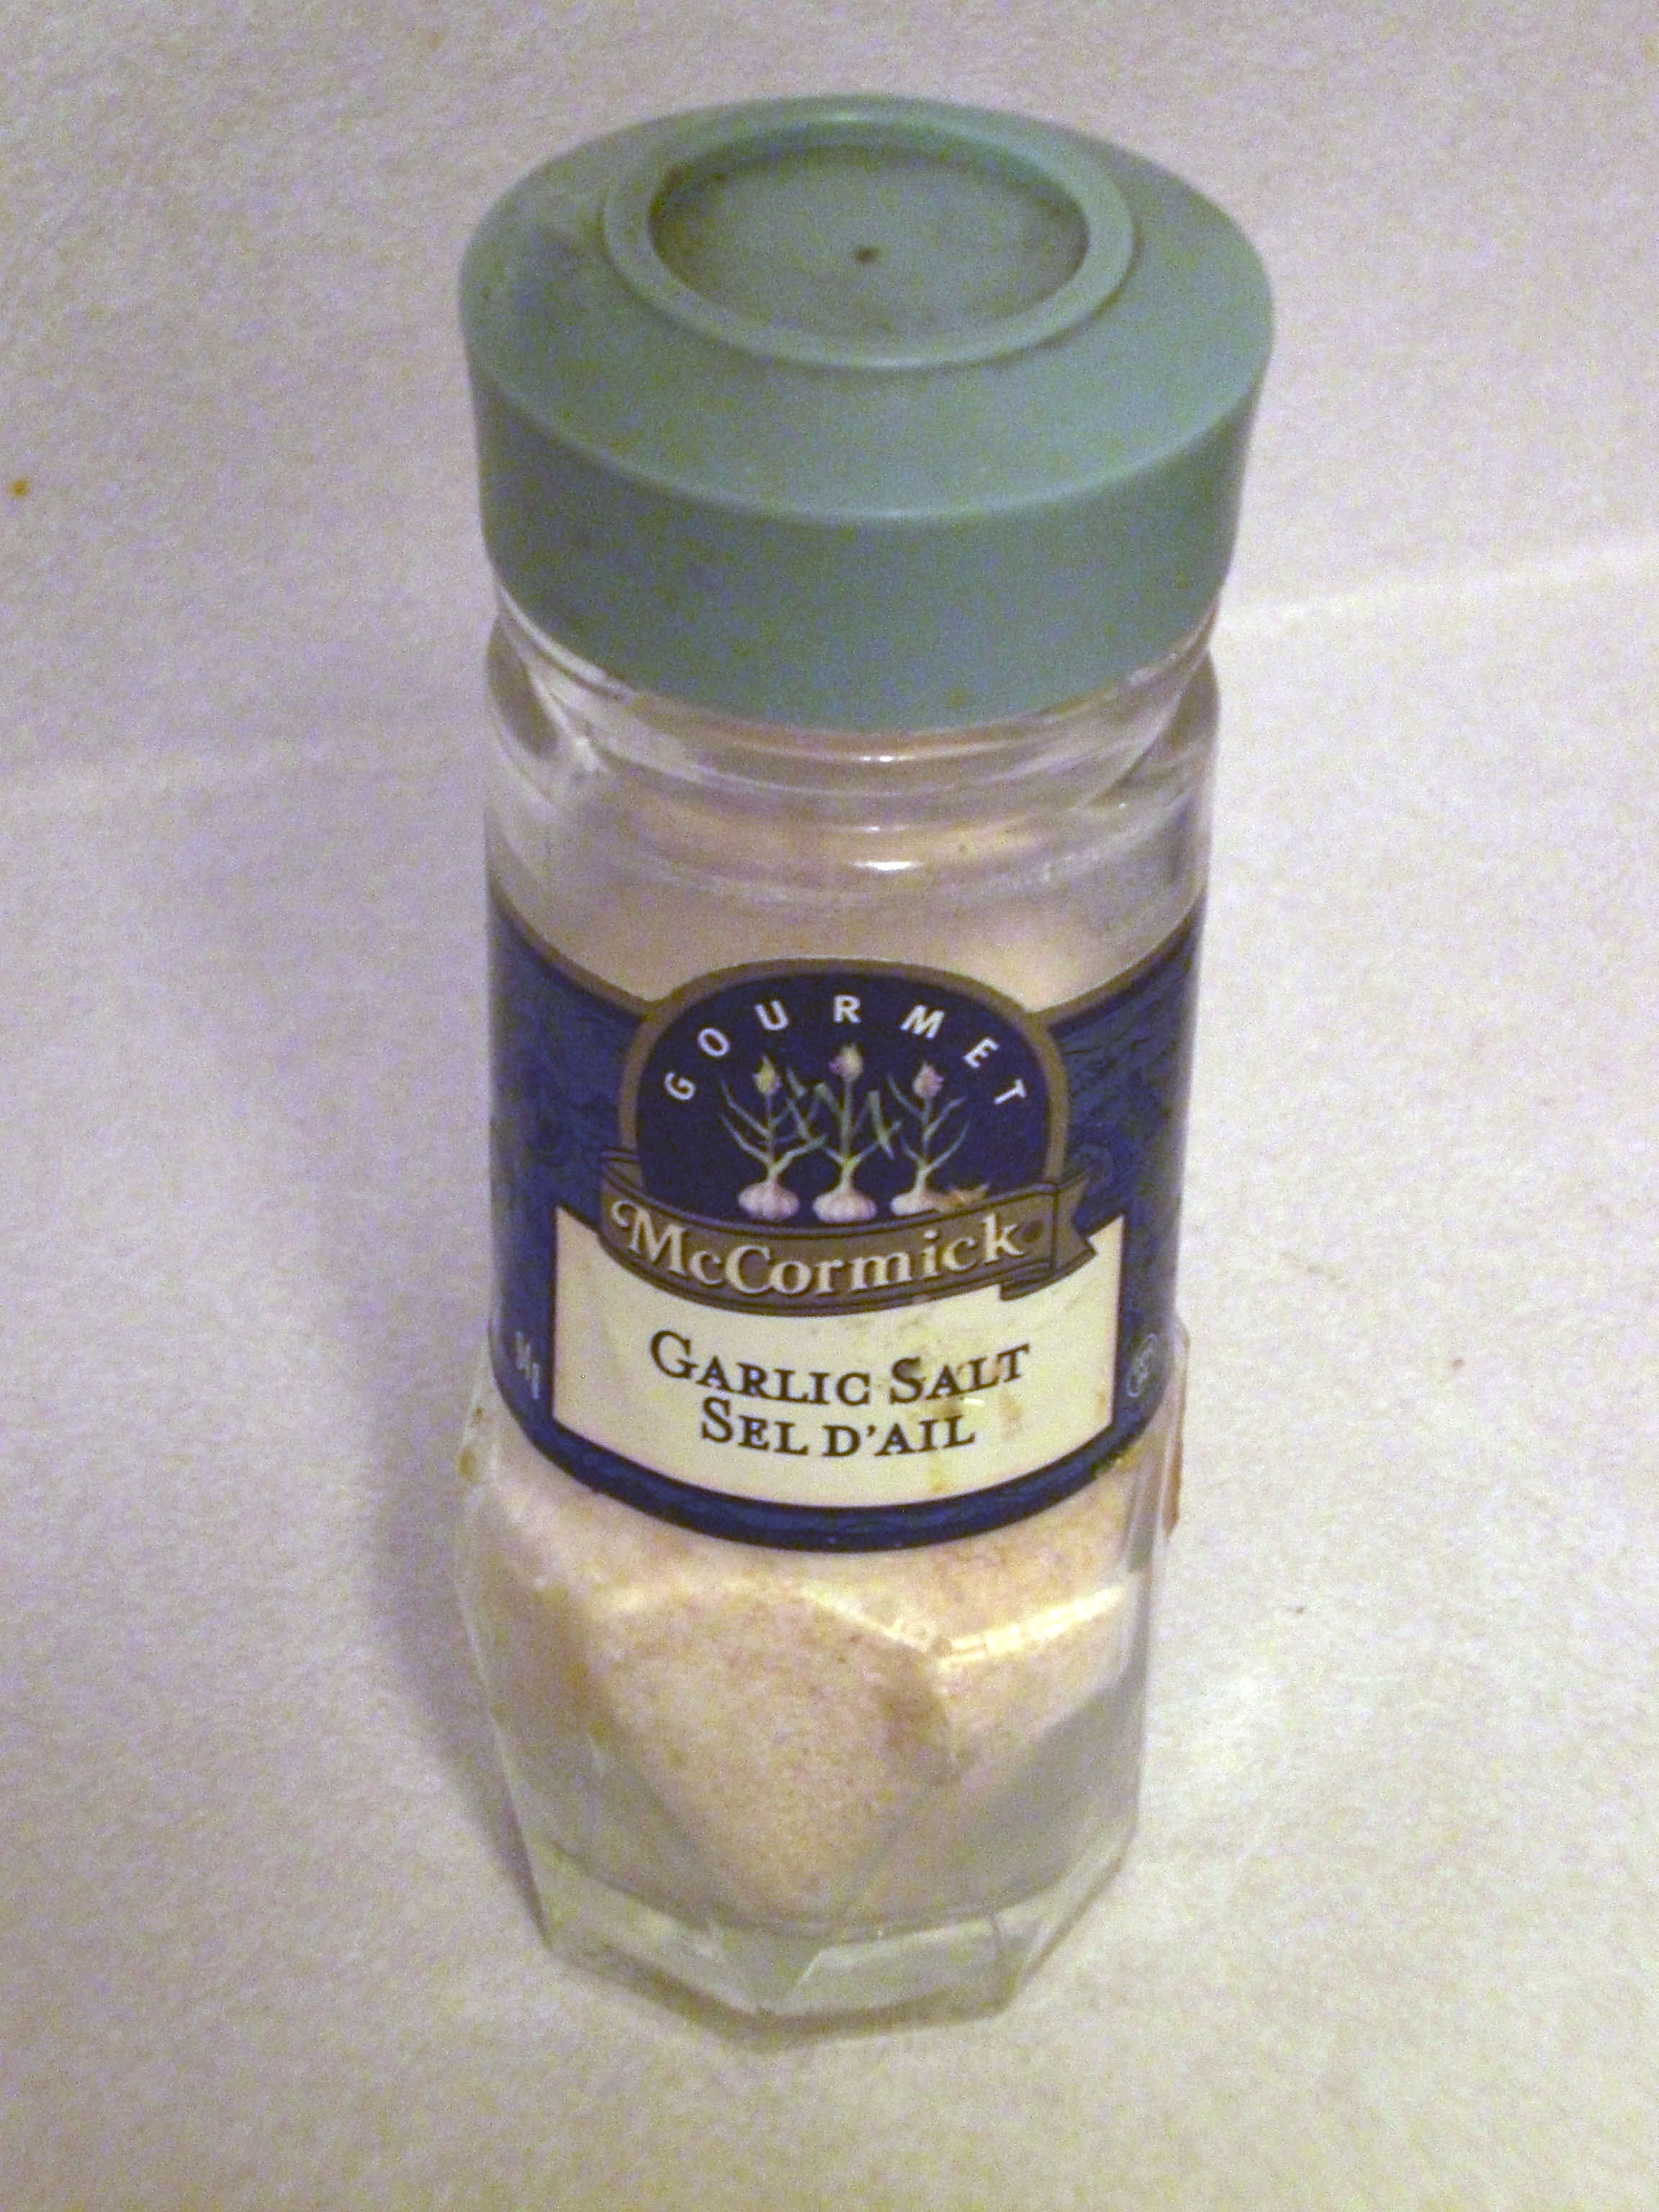 Seasoned salt - Wikipedia